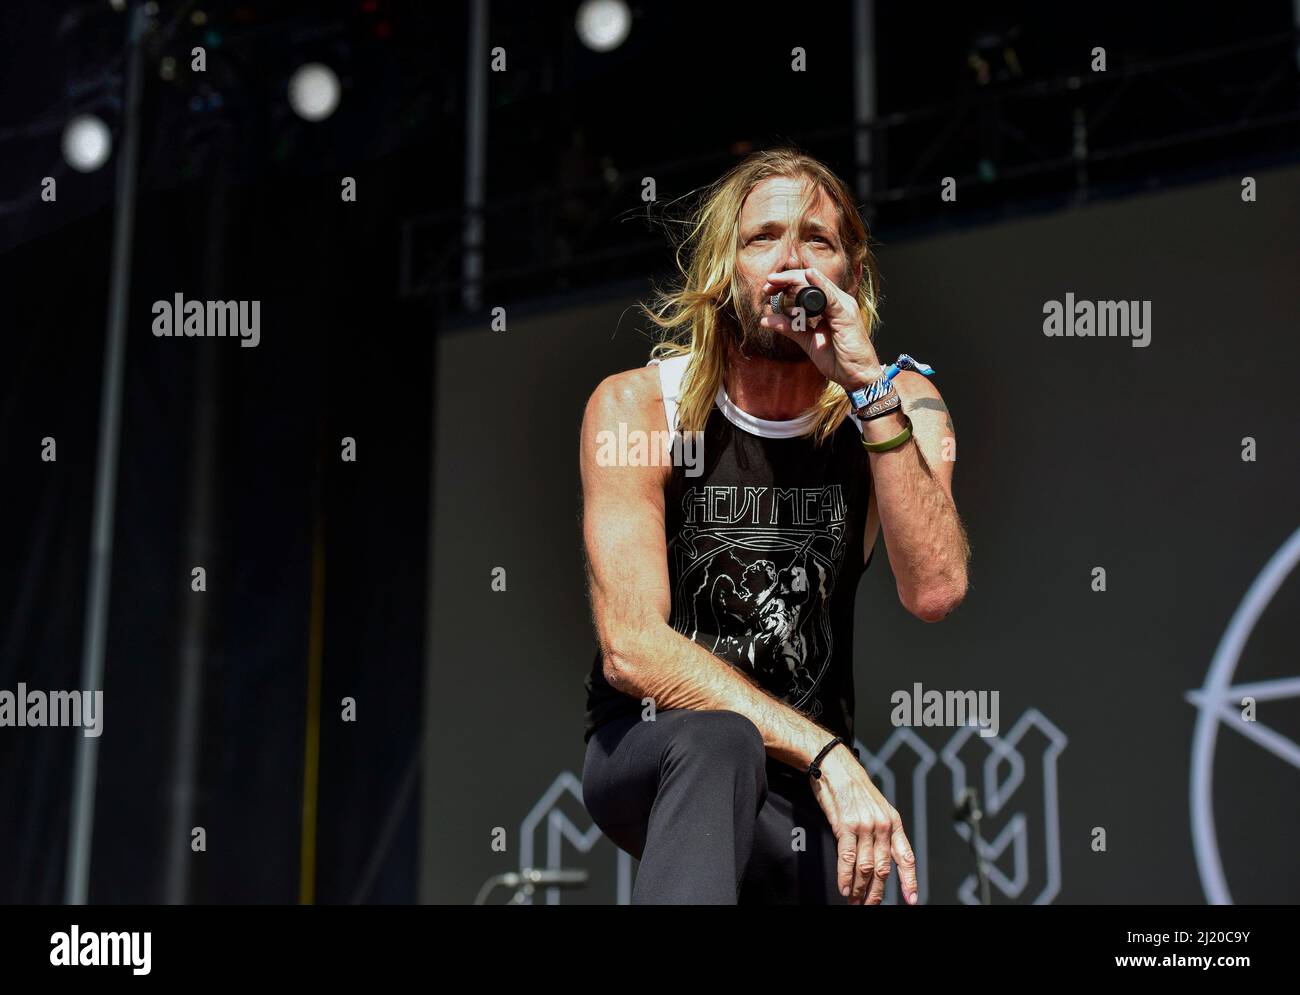 Taylor Hawkins en el escenario en BottleRock con su banda Chevy Metal 25th de mayo de 2019 Foto de stock